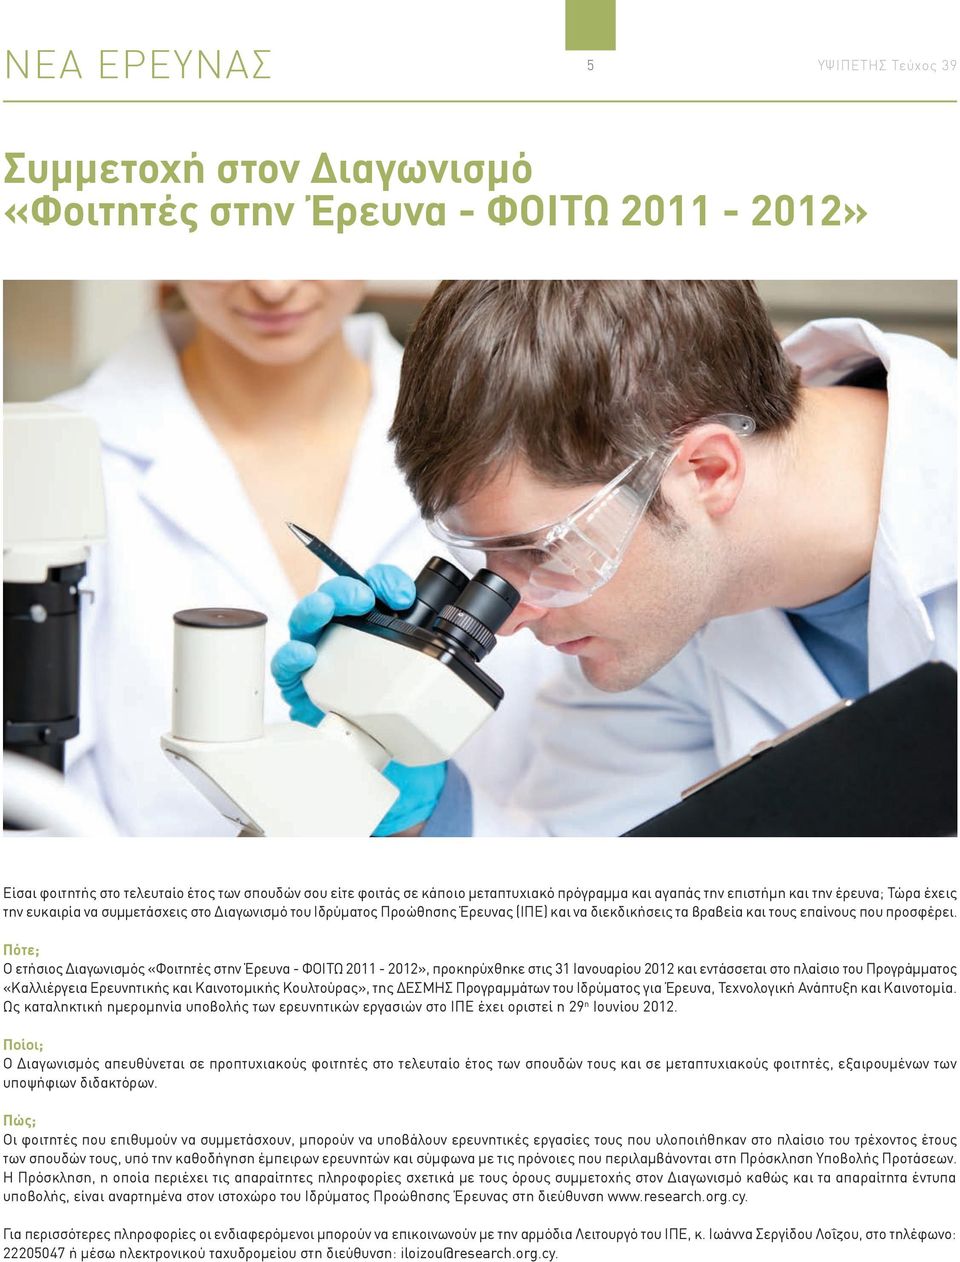 Πότε; Ο ετήσιος Διαγωνισμός «Φοιτητές στην Έρευνα - ΦΟΙΤΩ 2011-2012», προκηρύχθηκε στις 31 Ιανουαρίου 2012 και εντάσσεται στο πλαίσιο του Προγράμματος «Καλλιέργεια Ερευνητικής και Καινοτομικής